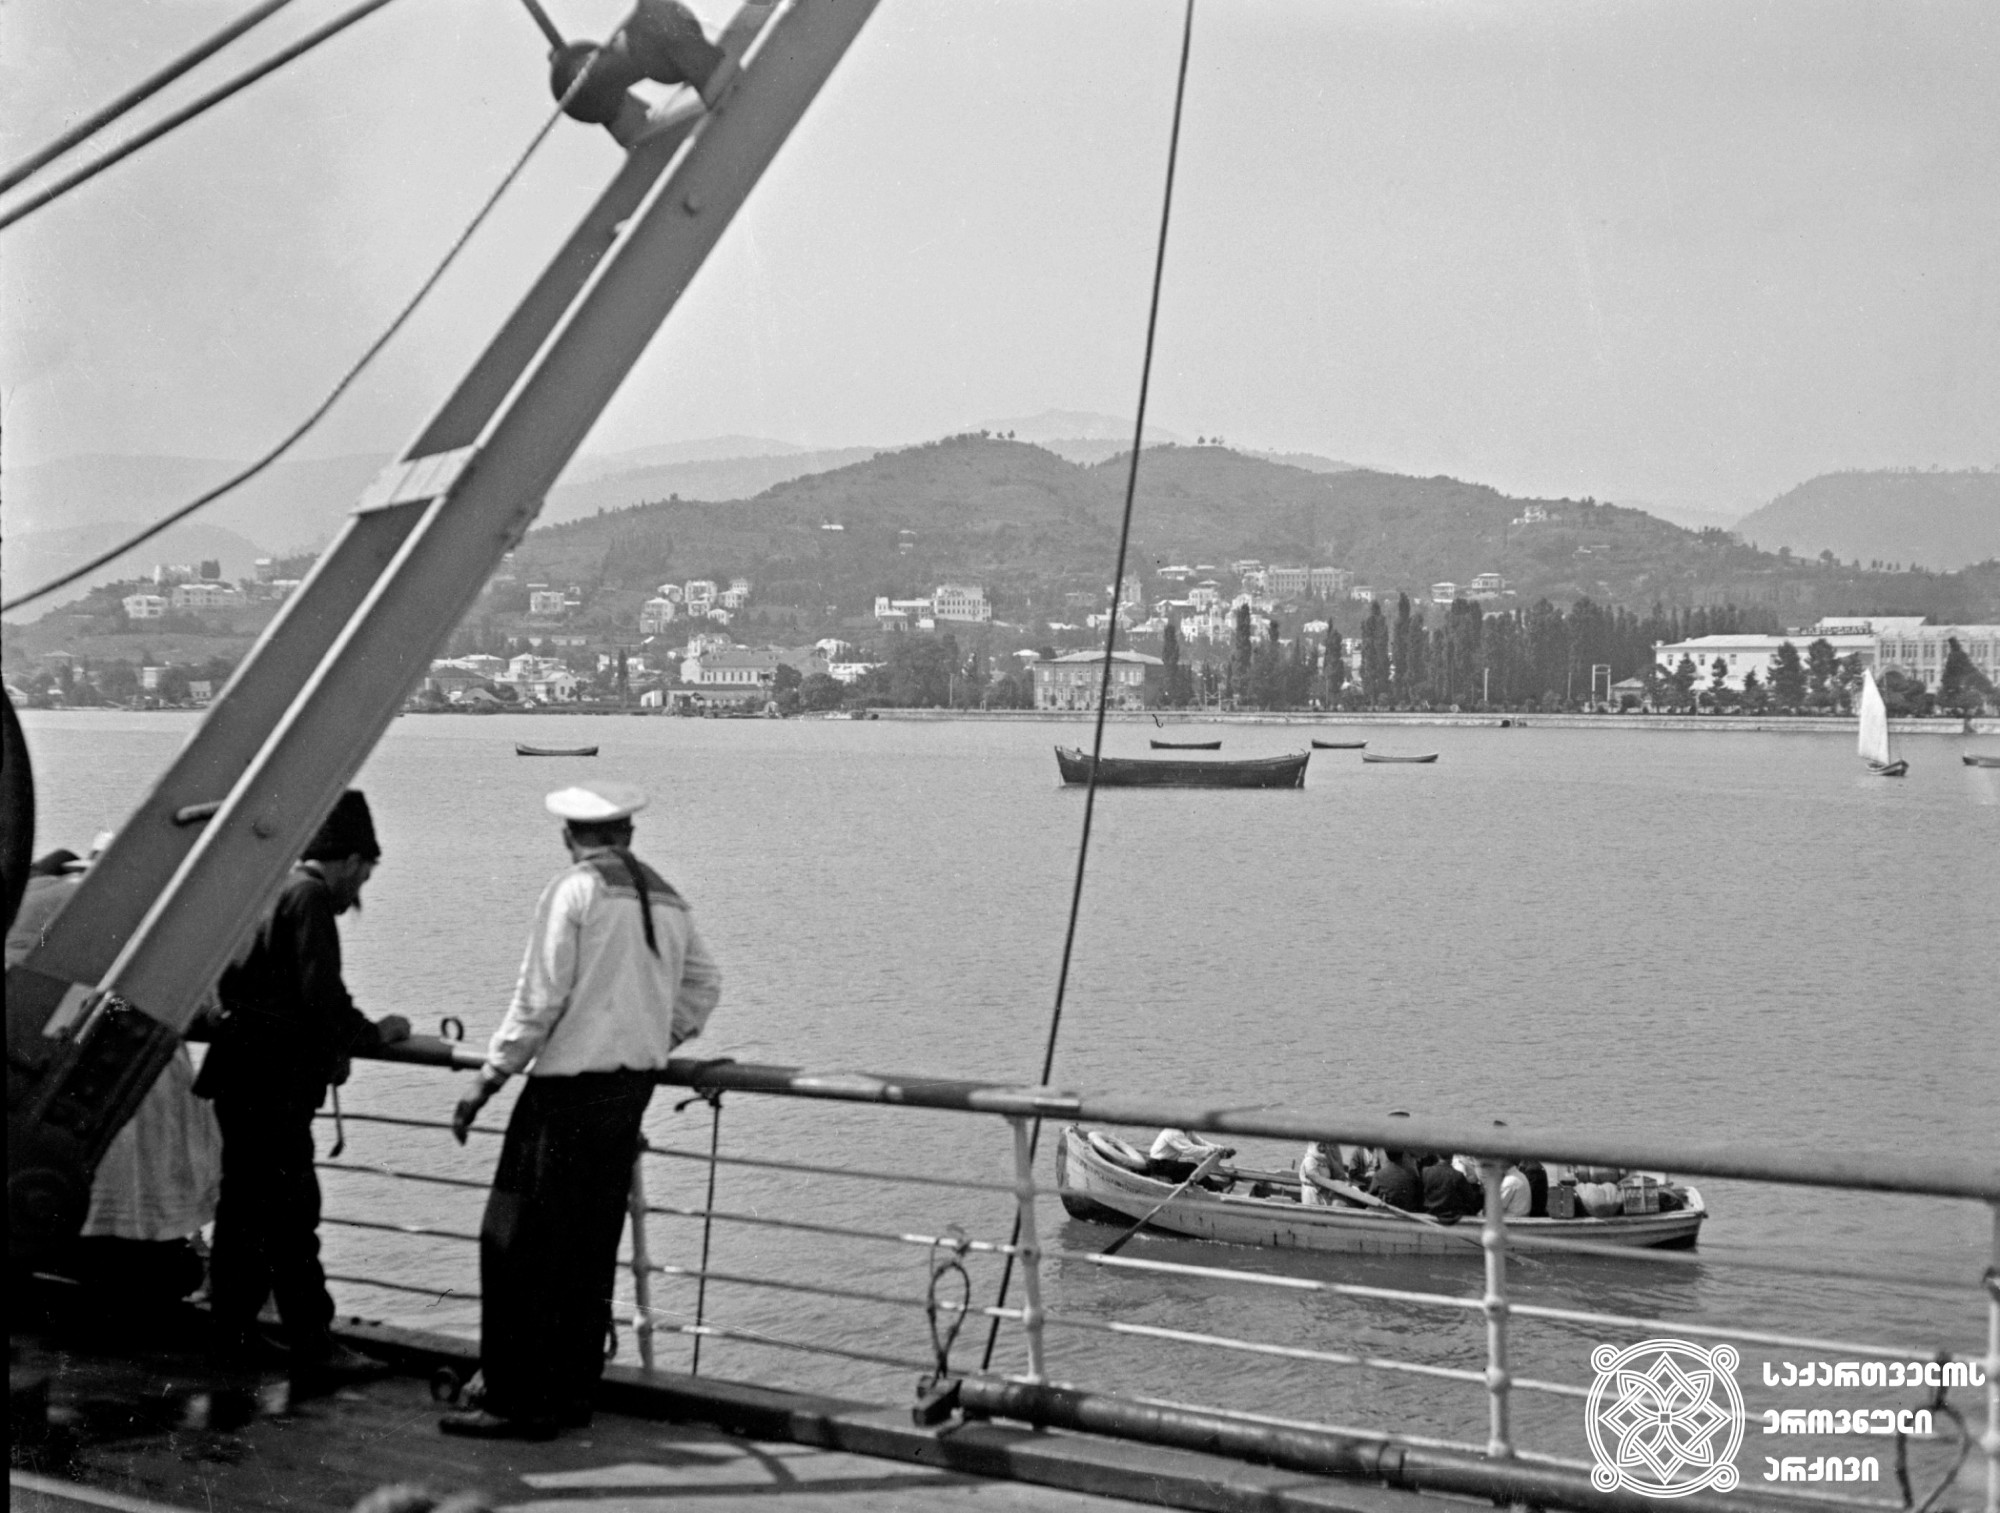 სოხუმის ხედი გემიდან <br>
[1910-1915] <br>
ვინოგრადოვ-ნიკიტინის კოლექცია <br>
View of Sokhumi from ship <br>
[1910-1915] <br>
From Vinogradov-nikitin’s collection <br>